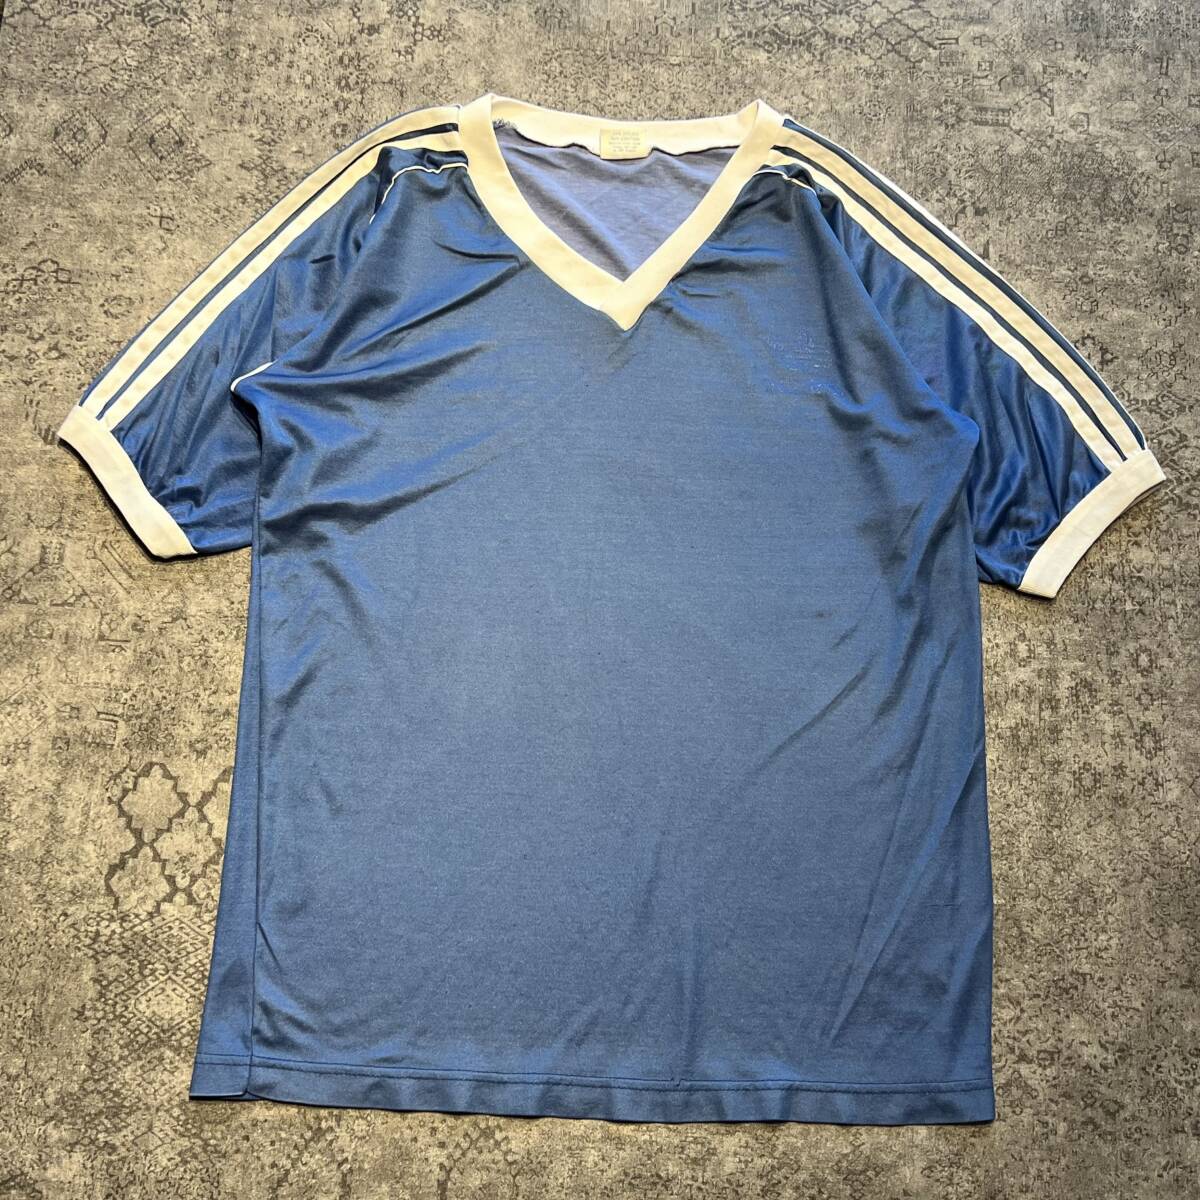 Vintage 90s adidas Game Shirt アディダス ゲームシャツ サッカー ユニフォーム トレフォイル ブルー 90年代 ヴィンテージ ビンテージの画像1